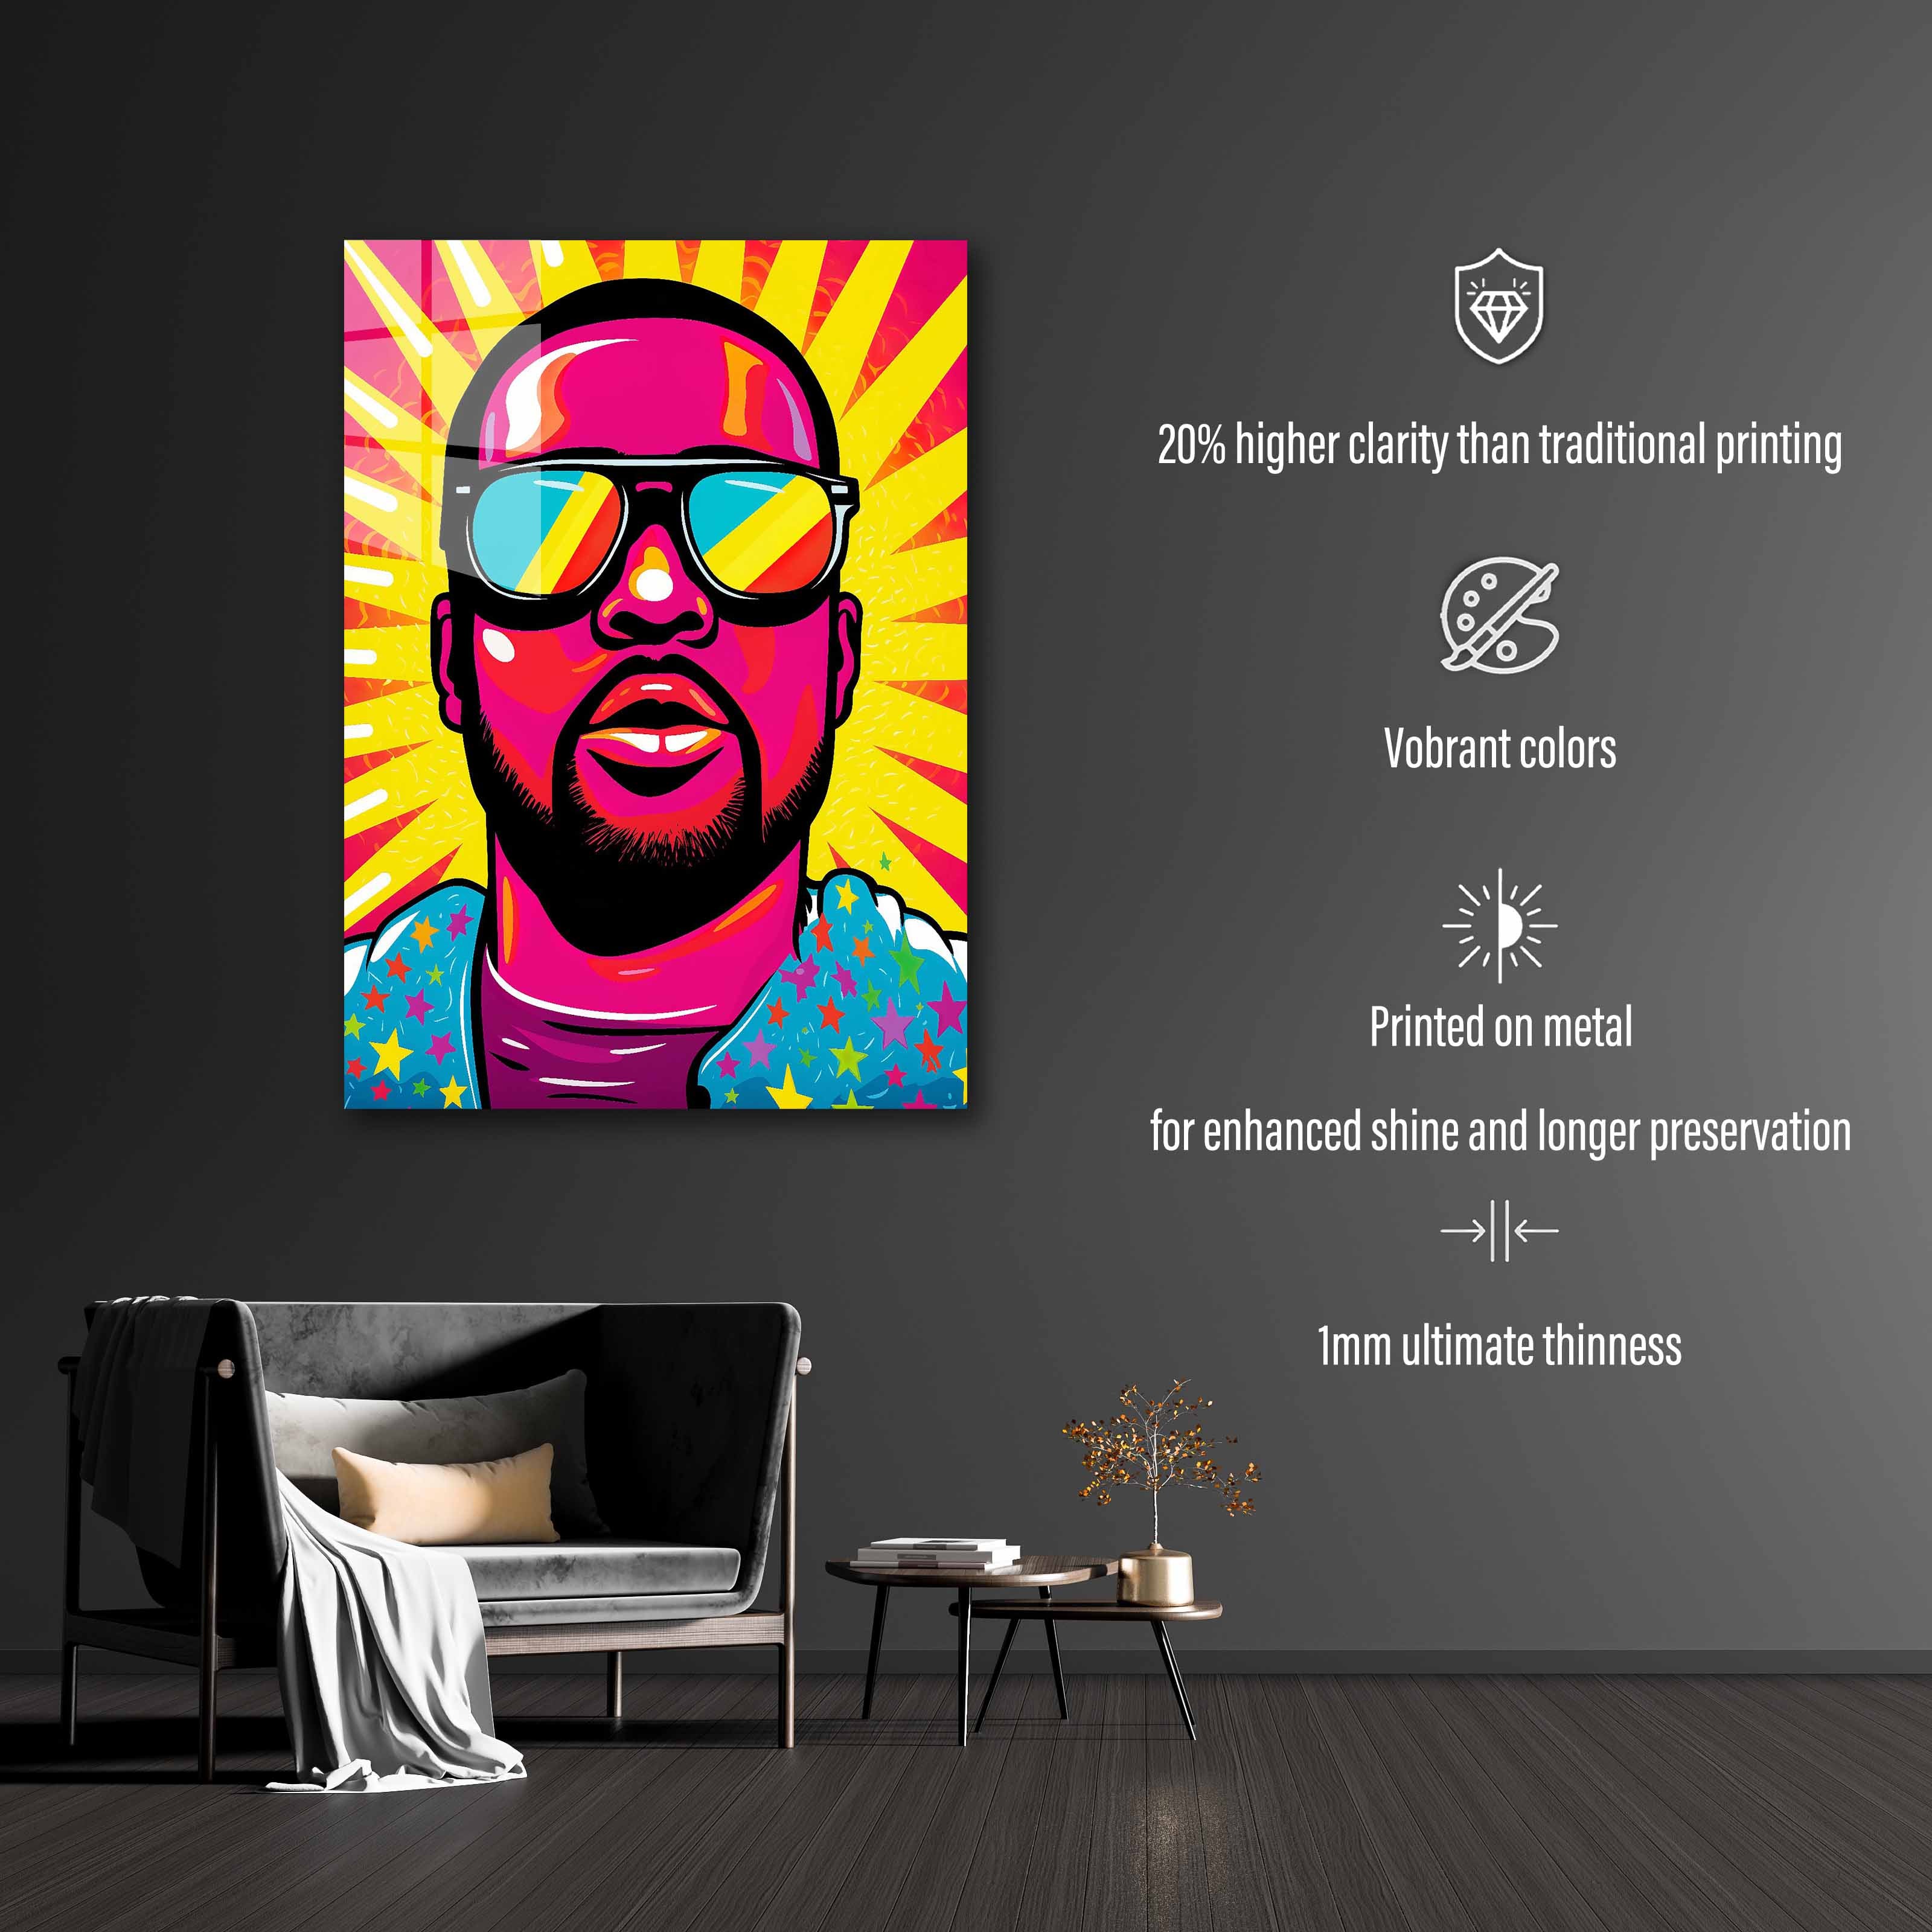 Ye Kanye West-designed by @WATON CORET